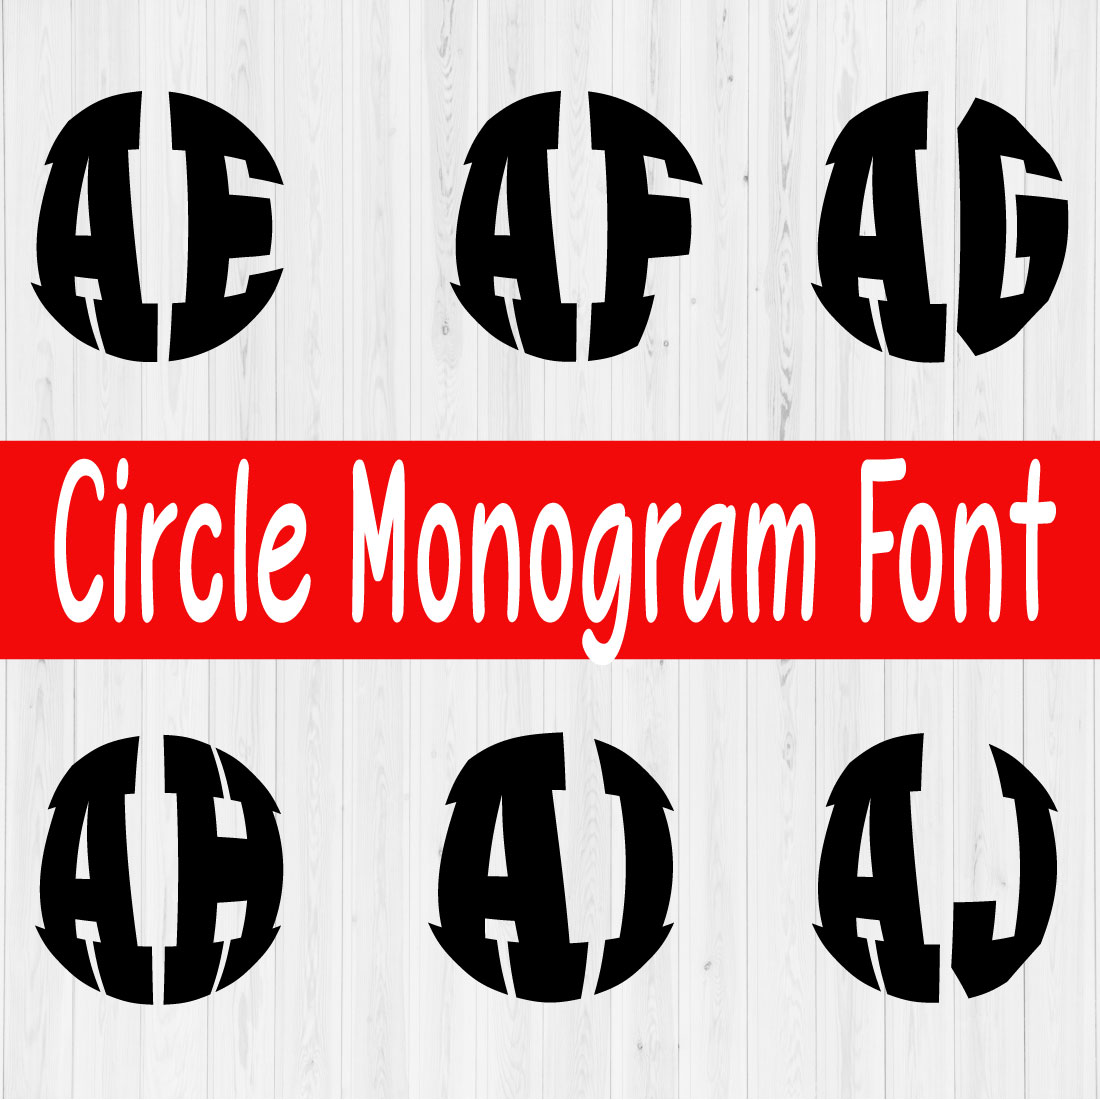 Circle Monogram Font Vol6 preview image.